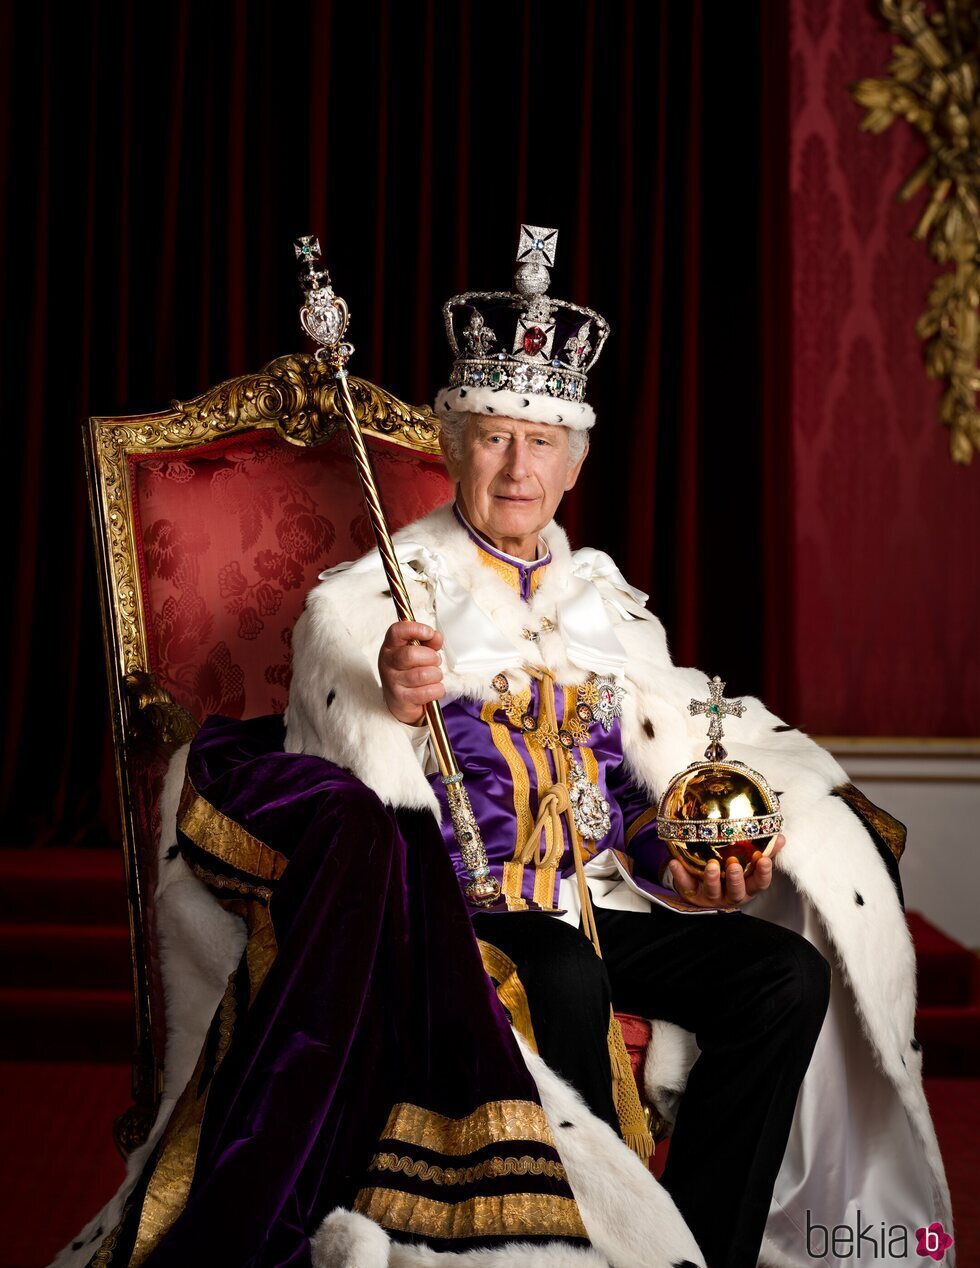 Foto oficial de Carlos III en su Coronación